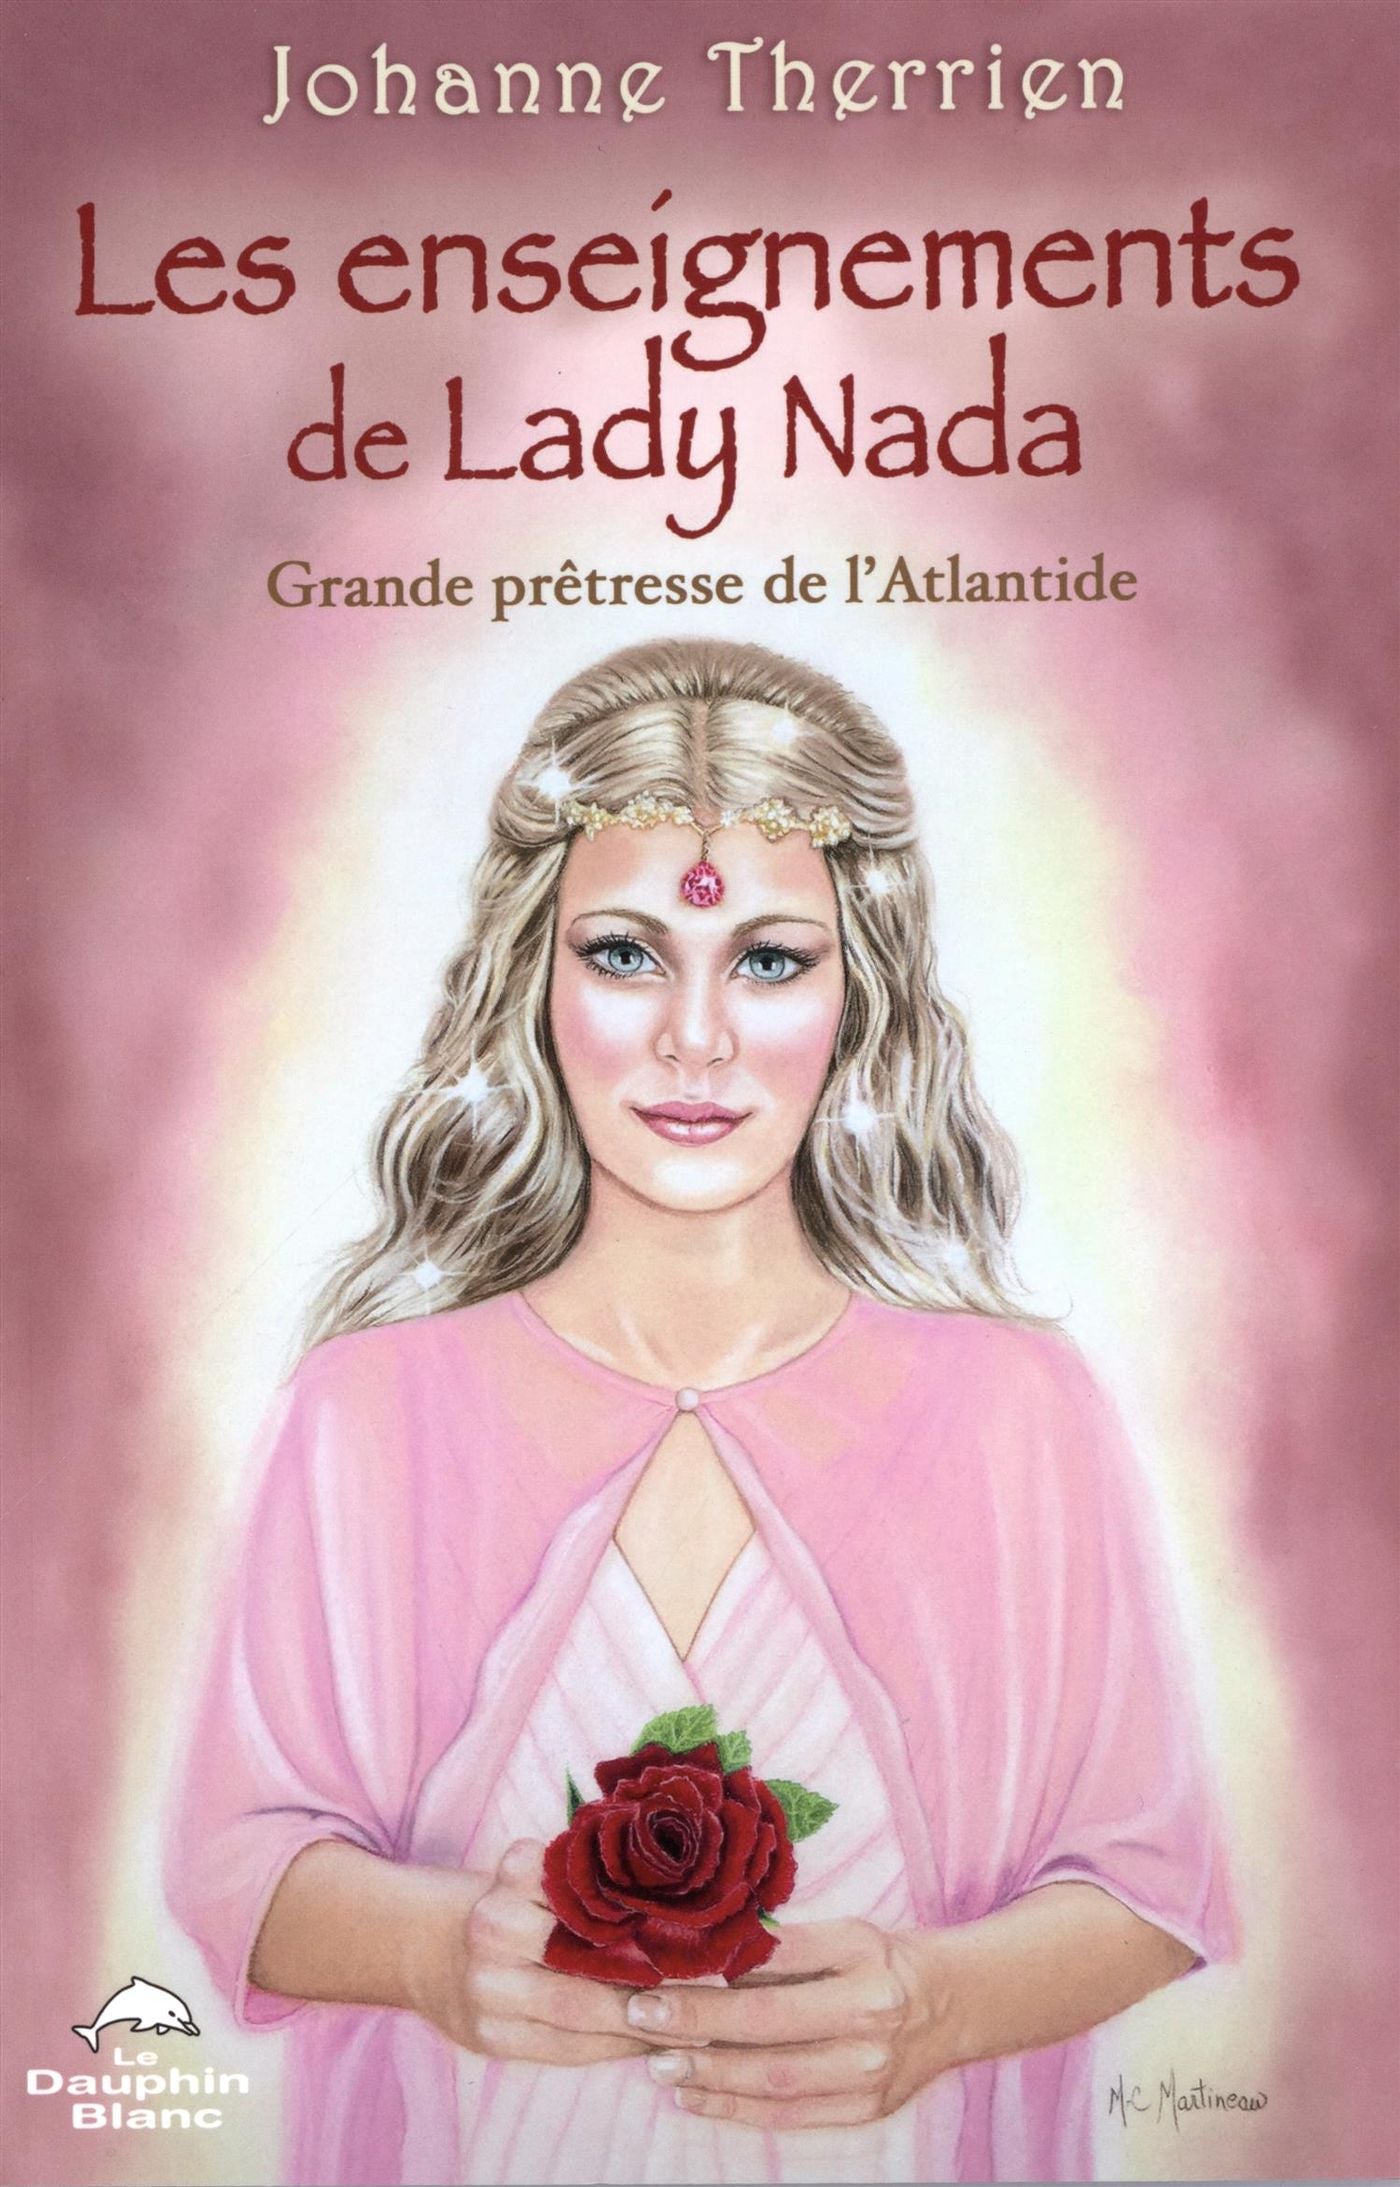 Les enseignements de Lady Nada : grande prêtresse de l'Atlantide - Johanne Therrien